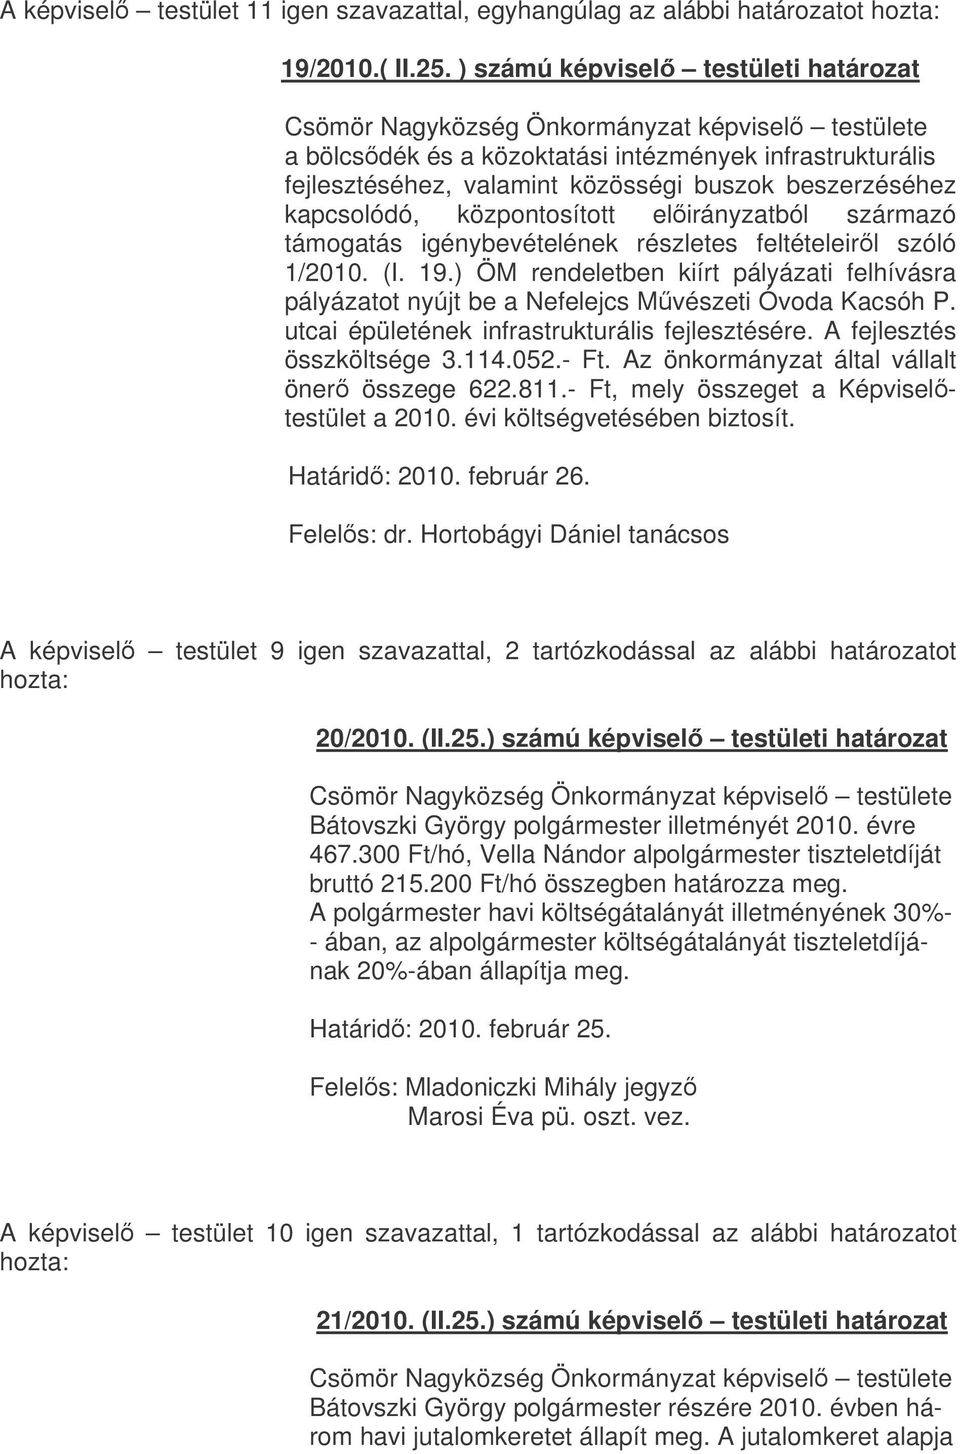 származó támogatás igénybevételének részletes feltételeirl szóló 1/2010. (I. 19.) ÖM rendeletben kiírt pályázati felhívásra pályázatot nyújt be a Nefelejcs Mvészeti Óvoda Kacsóh P.